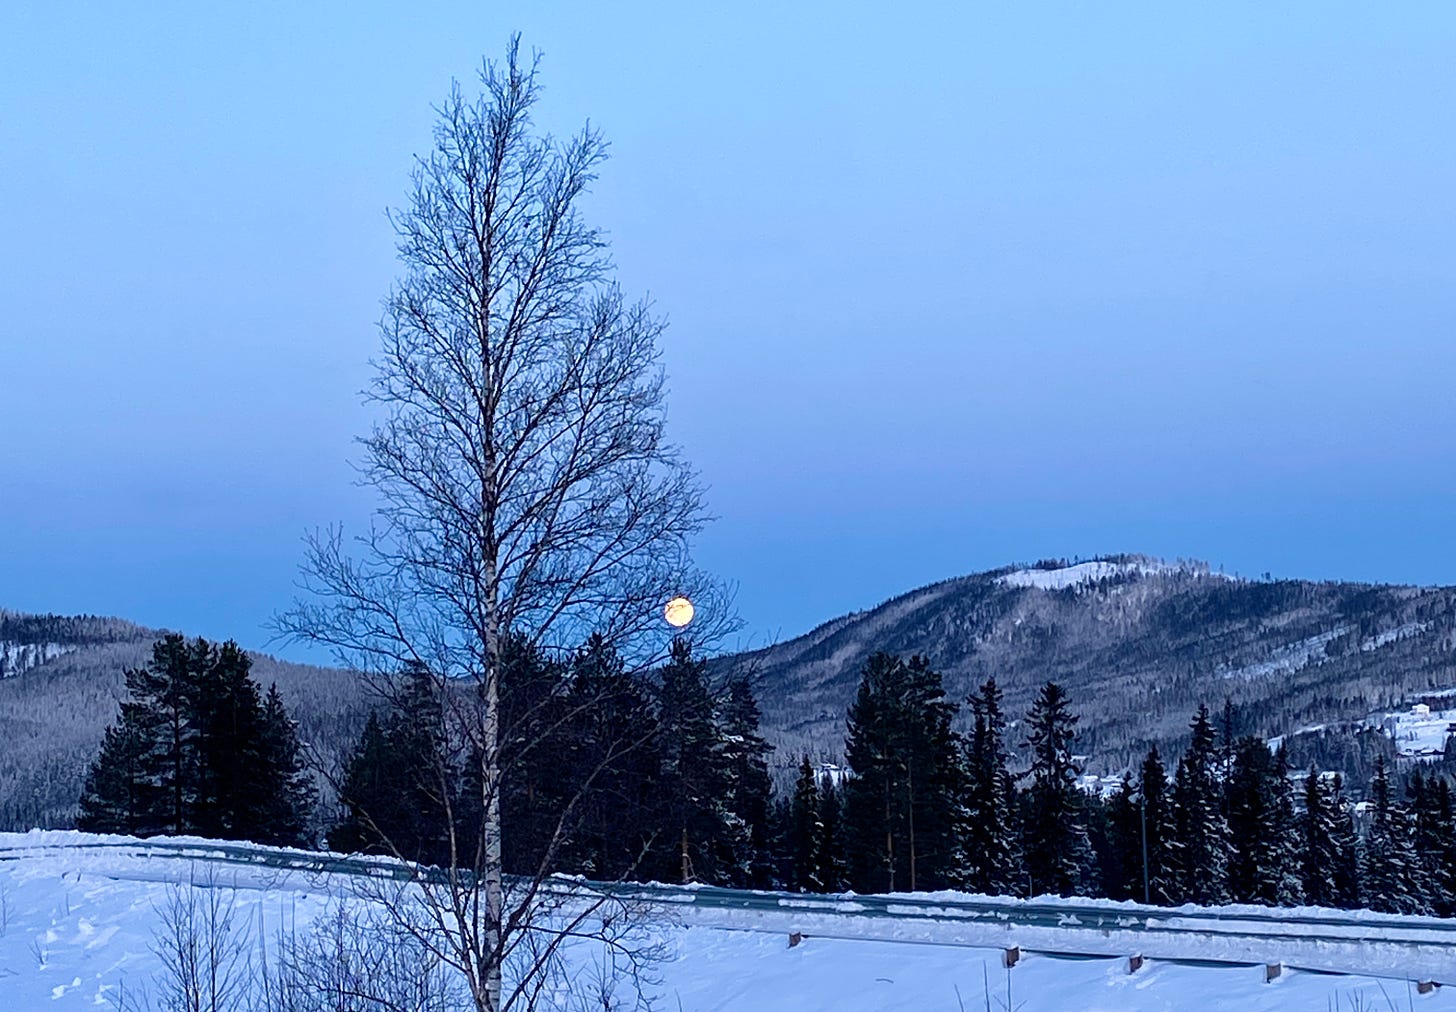 Caminho com neve, uma árvore alta seca, pinheiros enfileirados atrás, a montanha e a lua nascendo